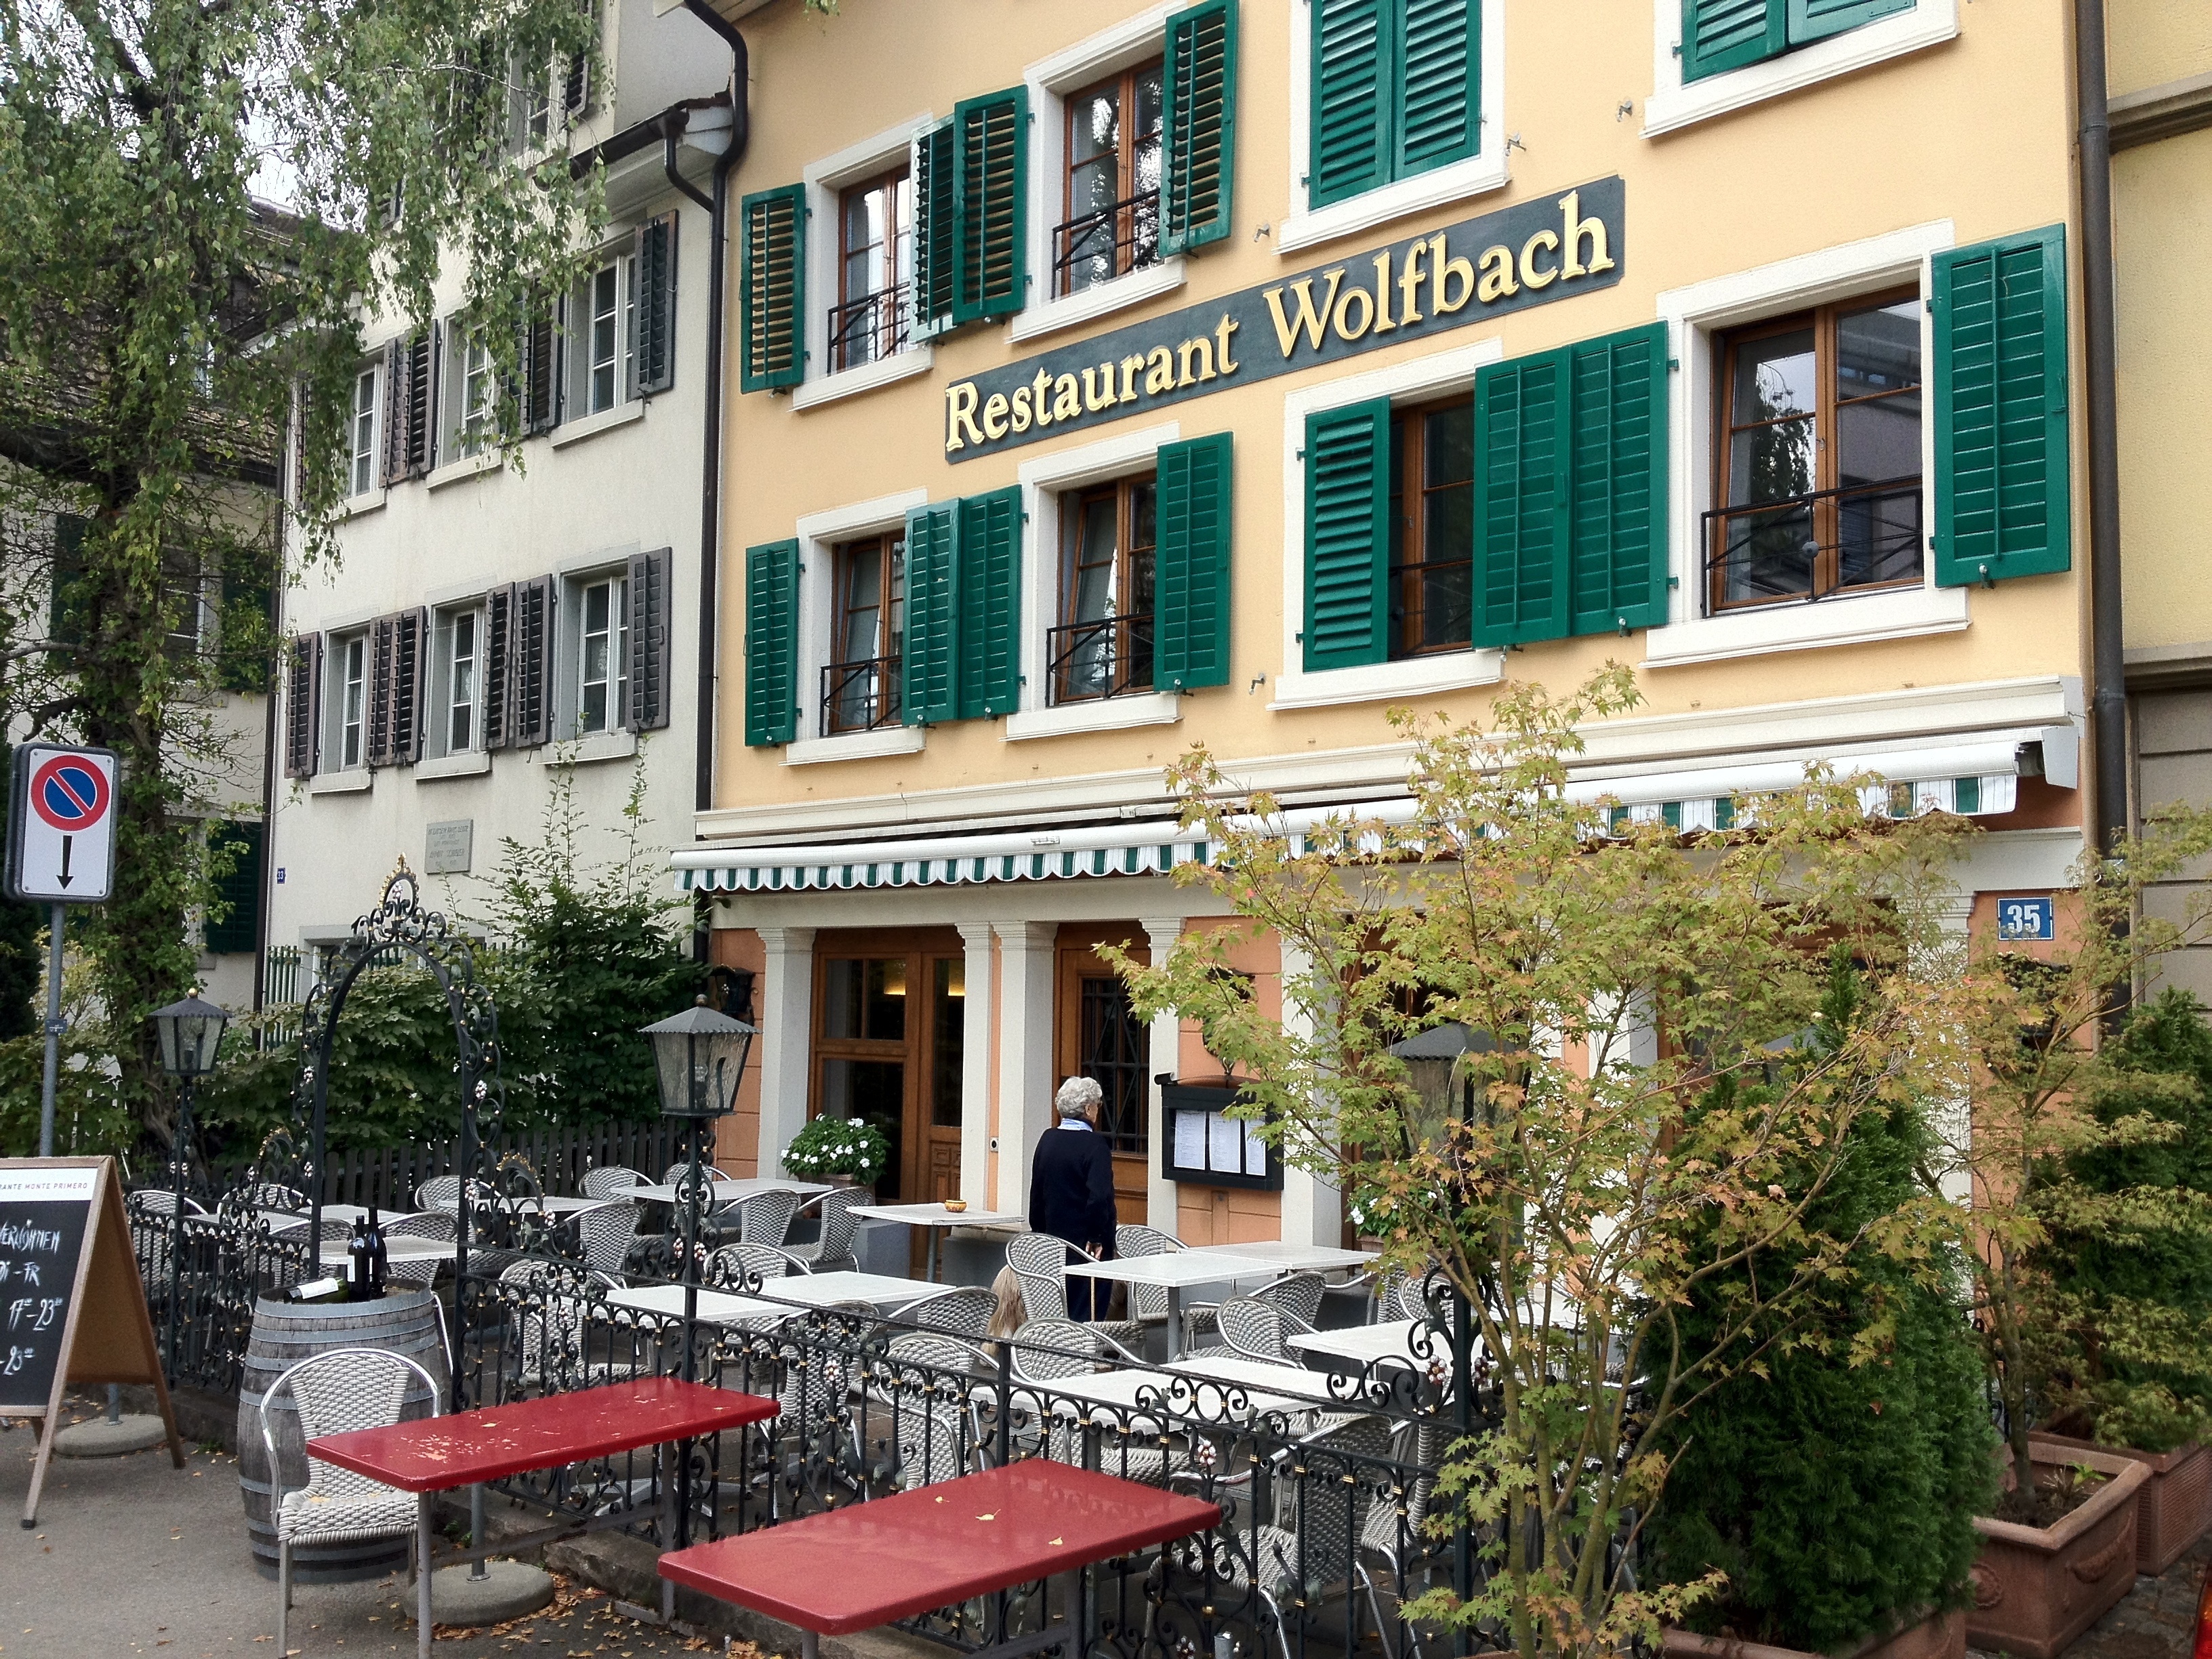 Restaurant Wolfbach, Wolfbachstrasse 35 in Zürich